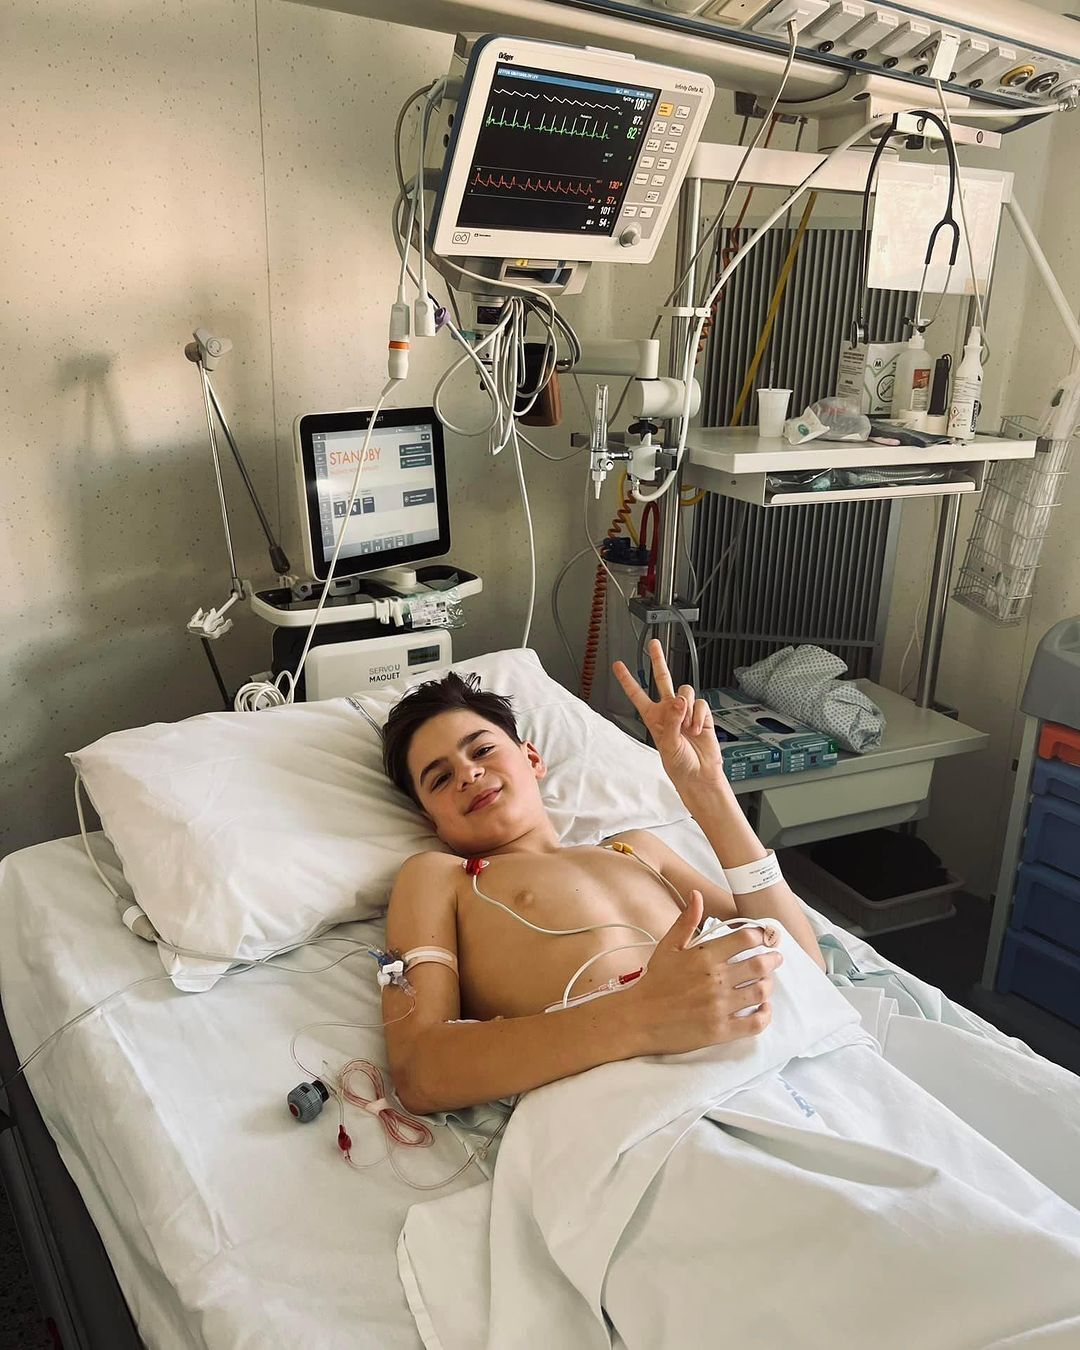 Лев Крутоголов в больнице после автомобильной аварии